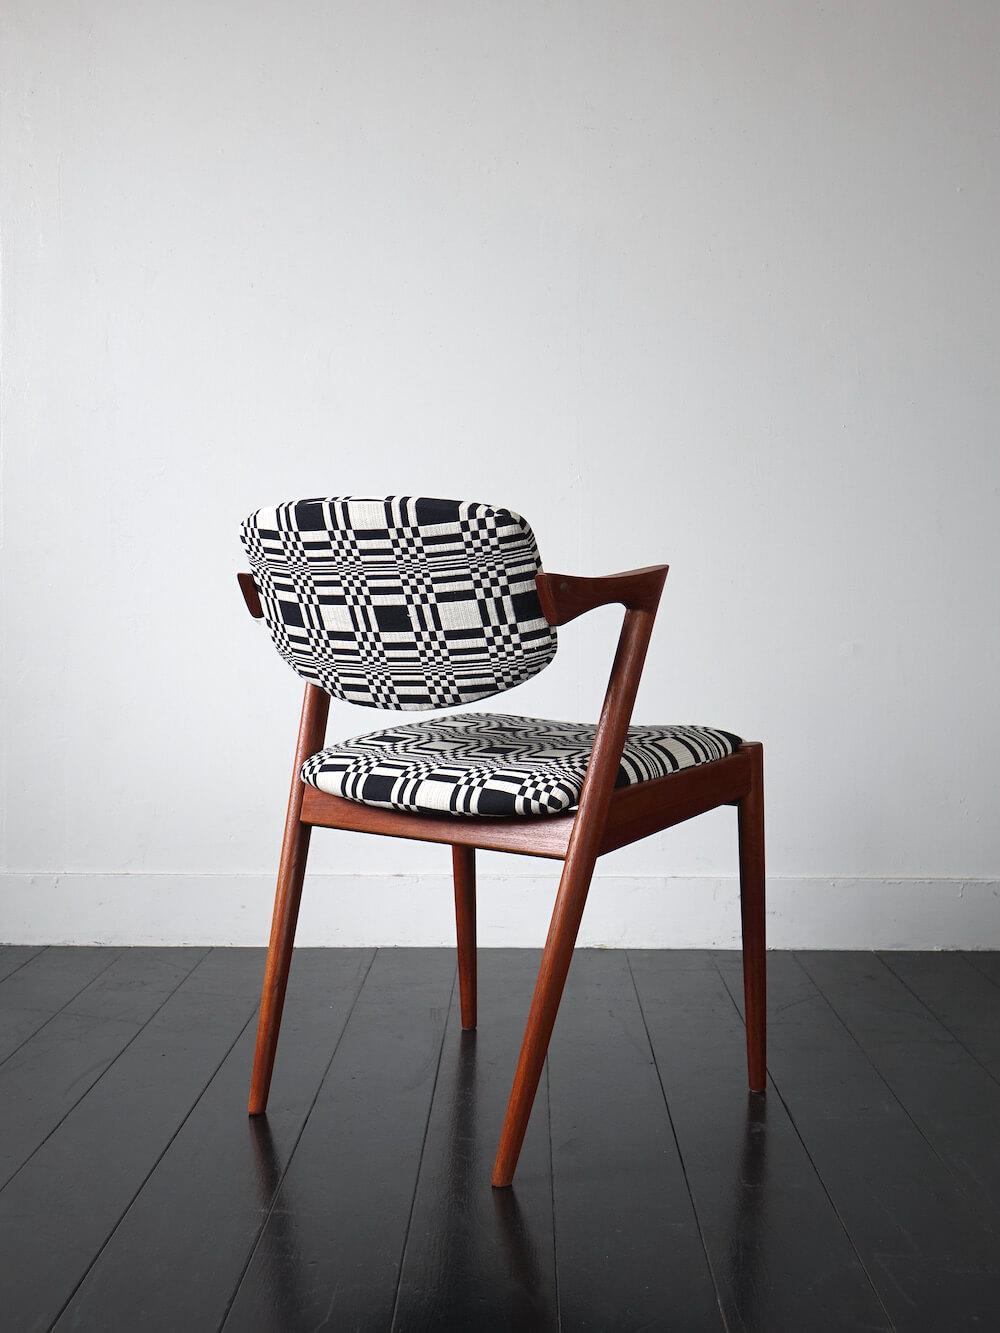 Dining chair “No.42” by Kai Kristiansen with Johanna Gullichsen / Doris